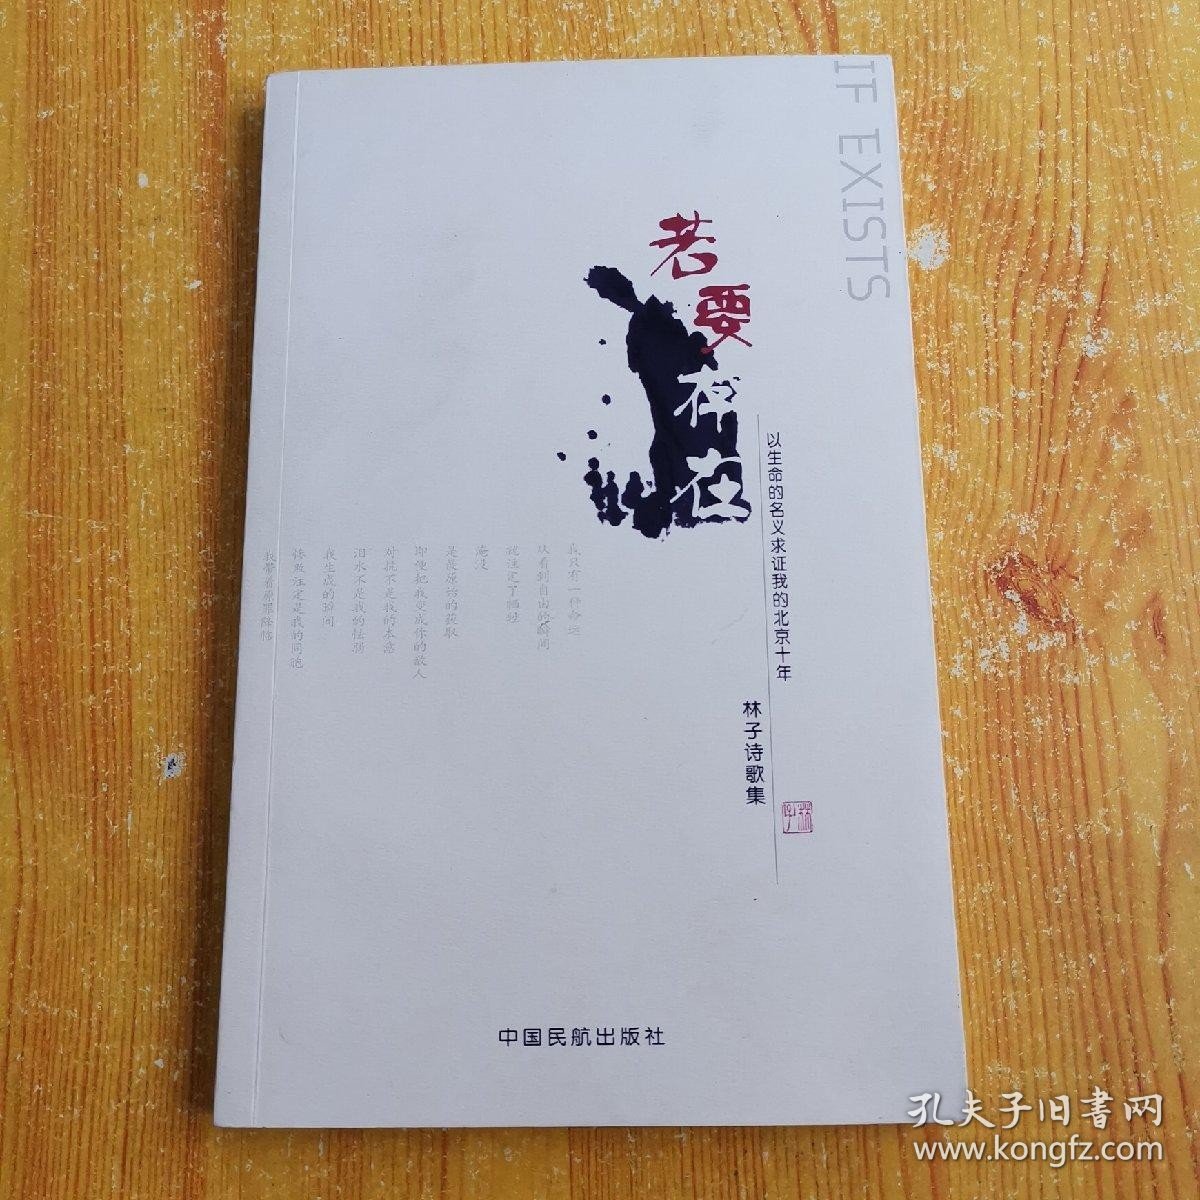 若要存在:以生命的名义求证我的北京十年:林子诗歌集